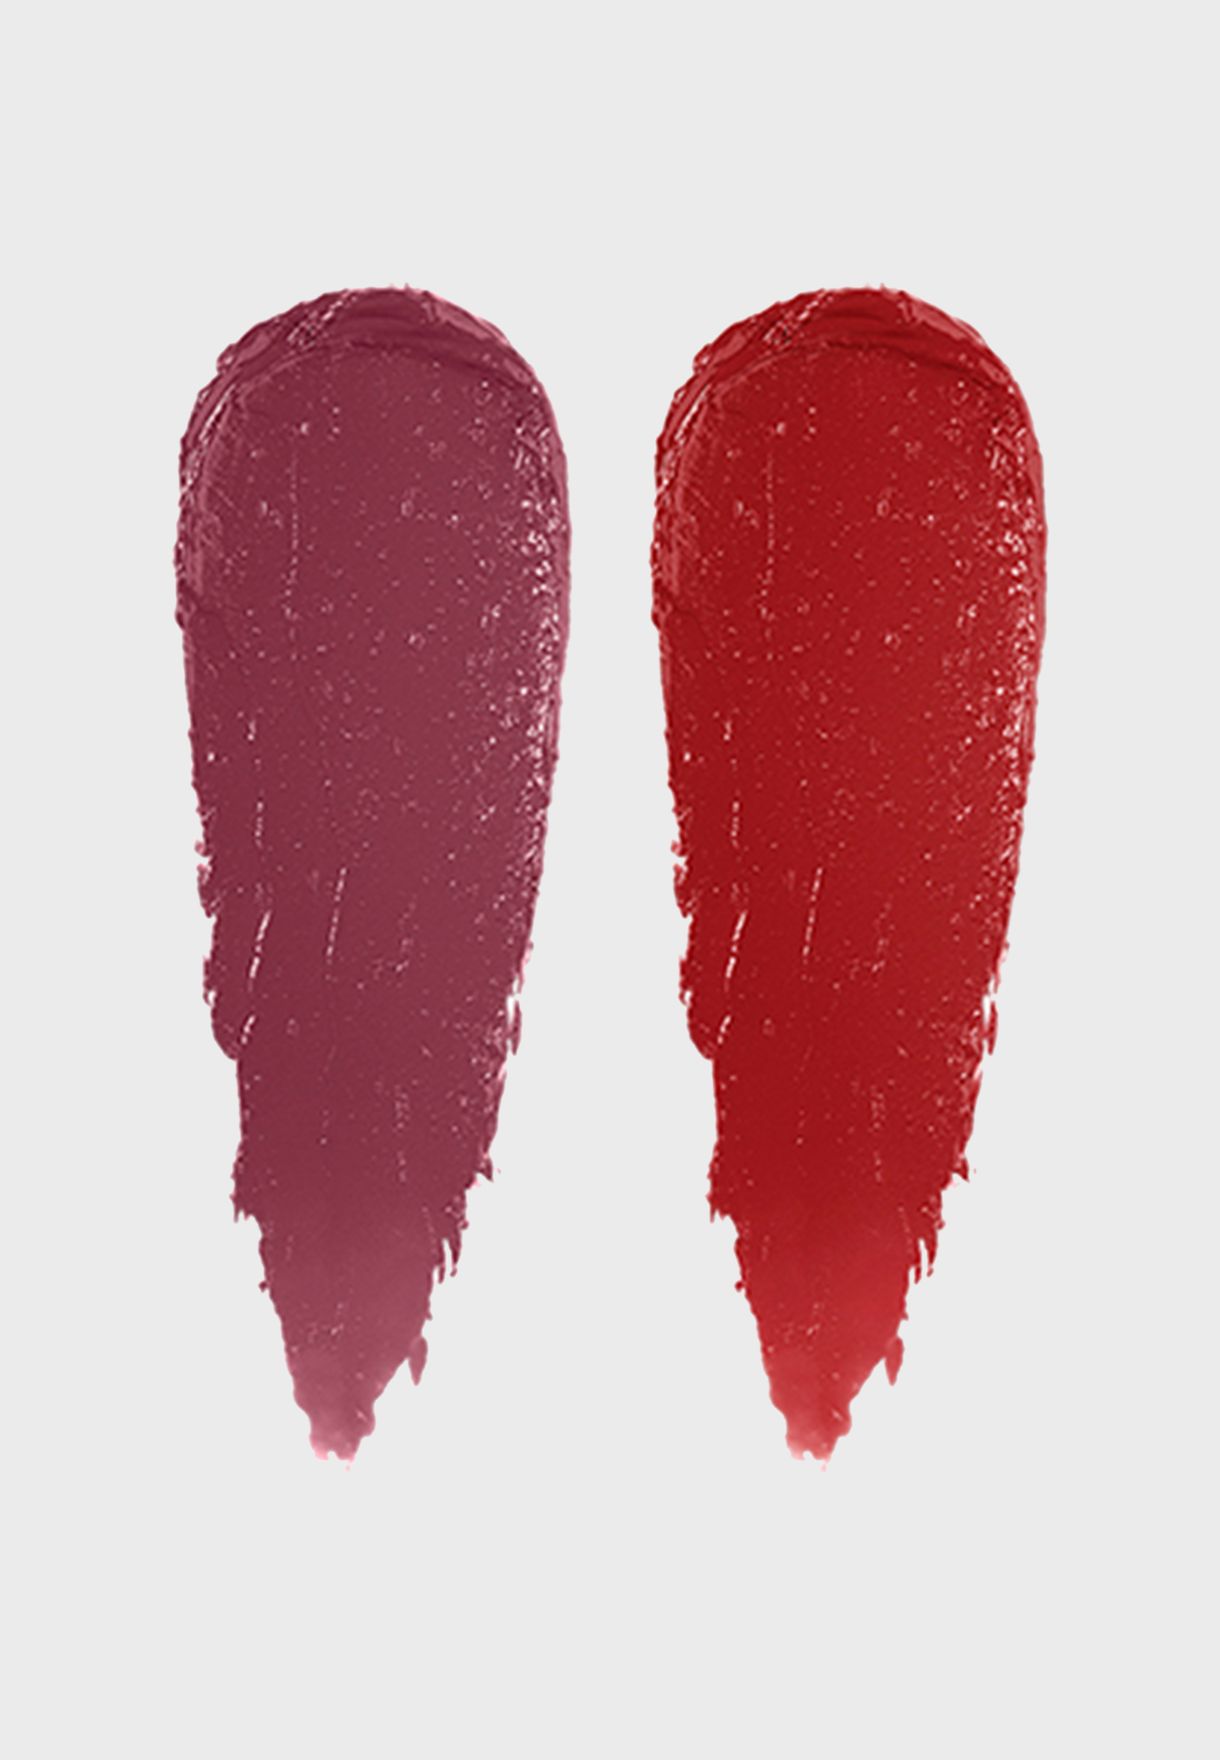  Mini Luxe Lip Color Duo Hibiscus & Parisian Red